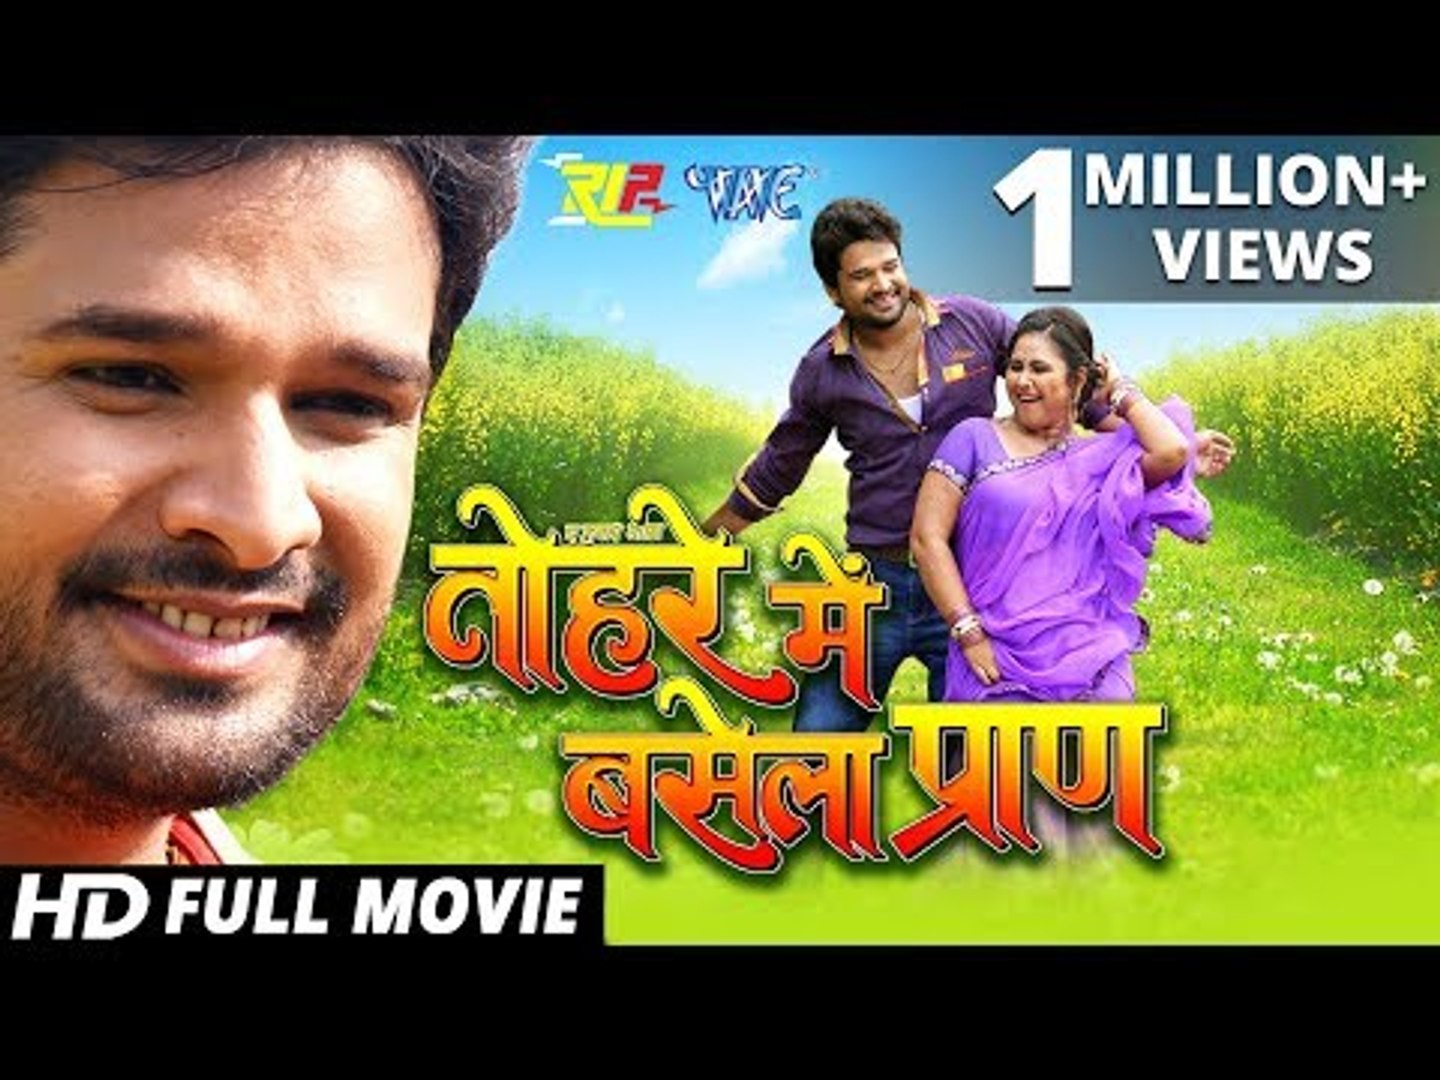 Tohare Mein Basela Praan - Superhit Full Bhojpuri Movie 2017 - Ritesh Pandey - Priyanka Pandit